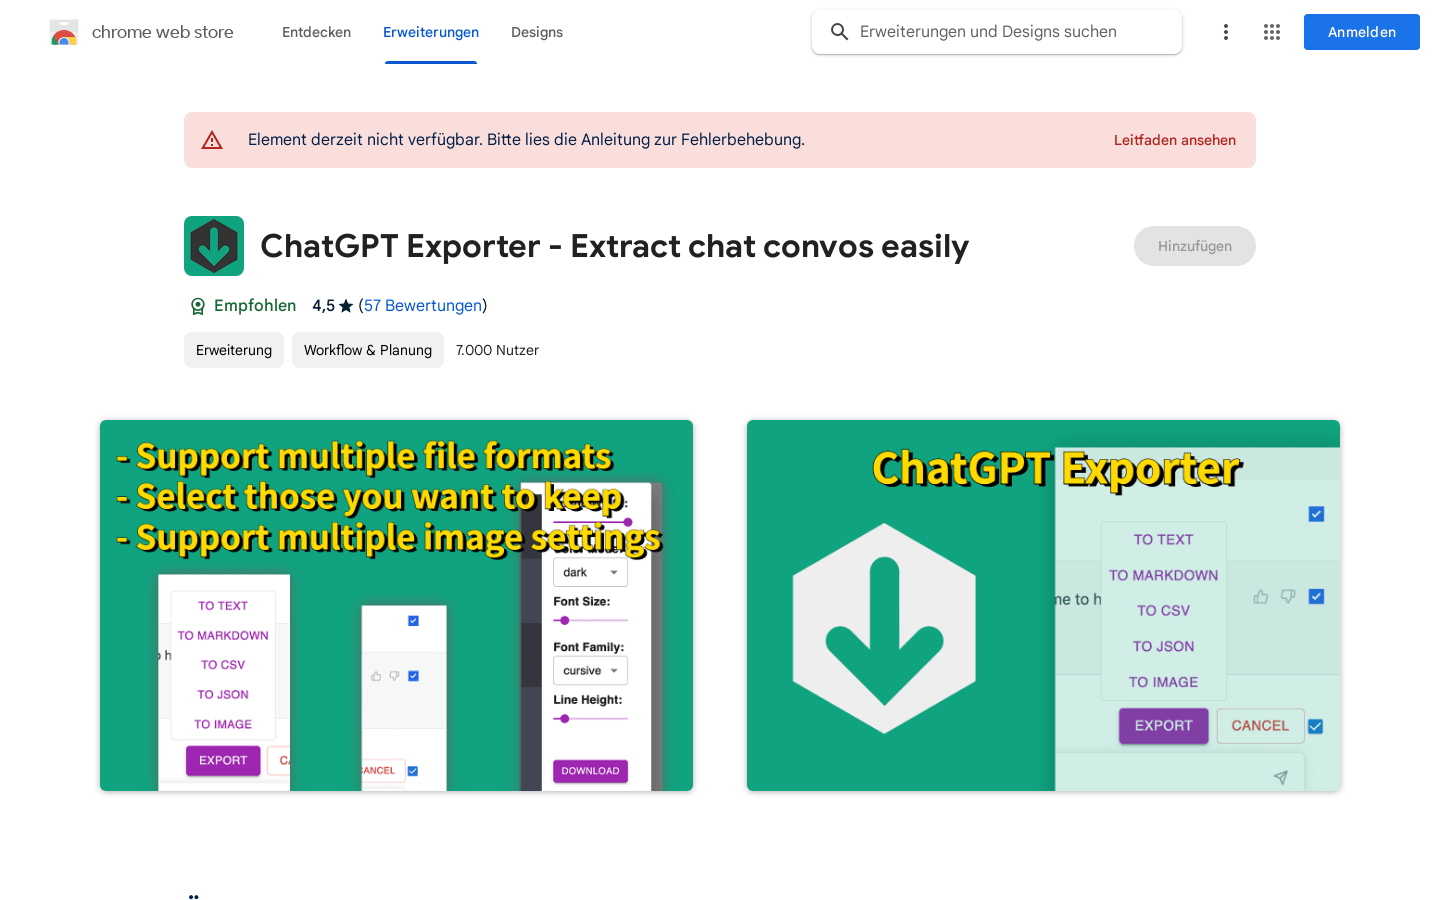 ChatGPT Exporter